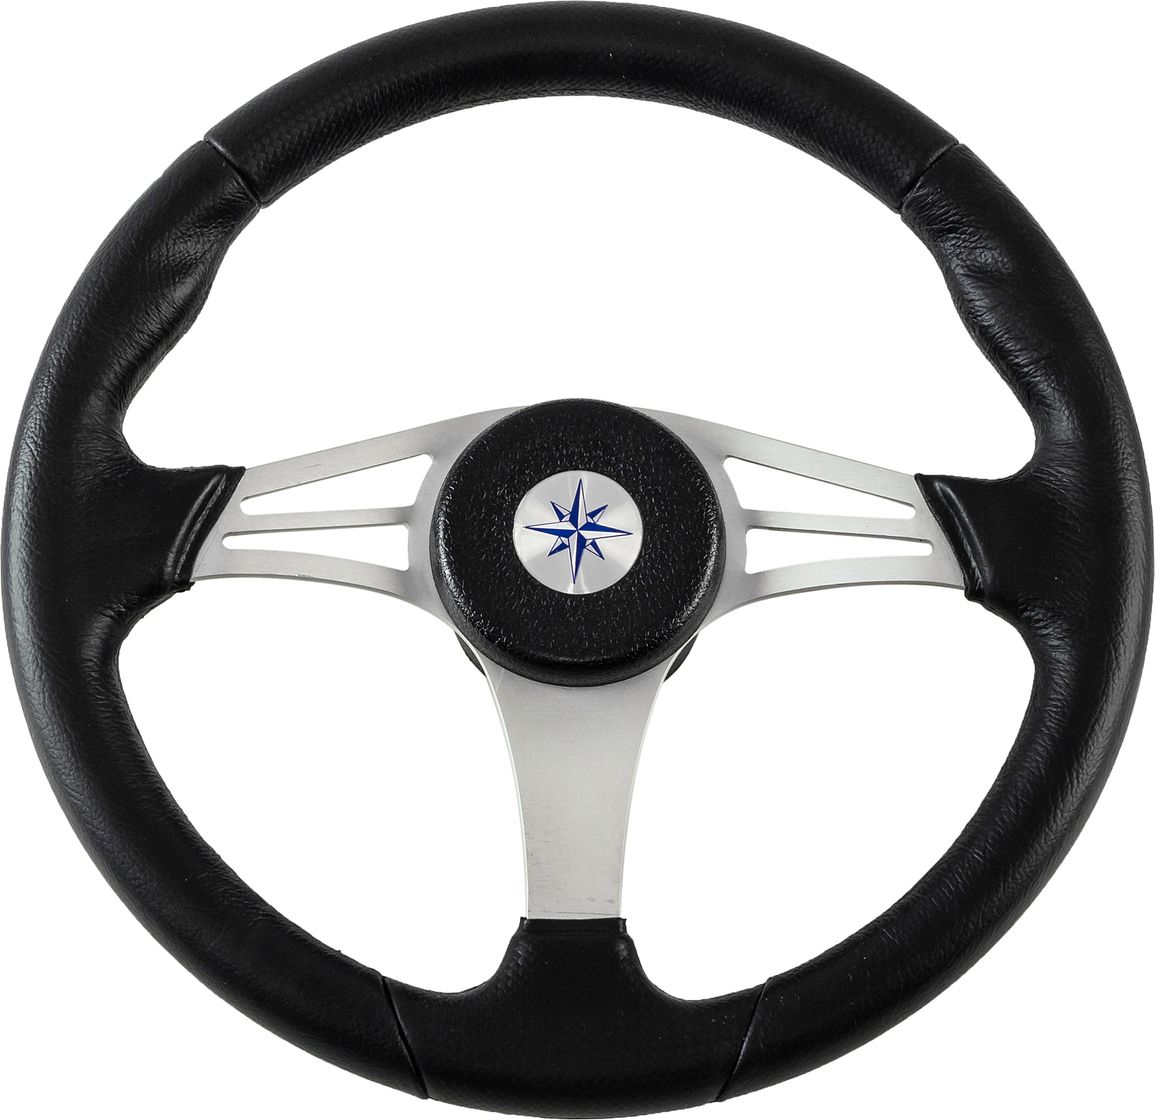 Рулевое колесо ENDURANCE обод черный, спицы серебряные д. 350 мм VN13511-01 рулевое колесо baltic обод спицы серебряные д 320 мм vn133203 01